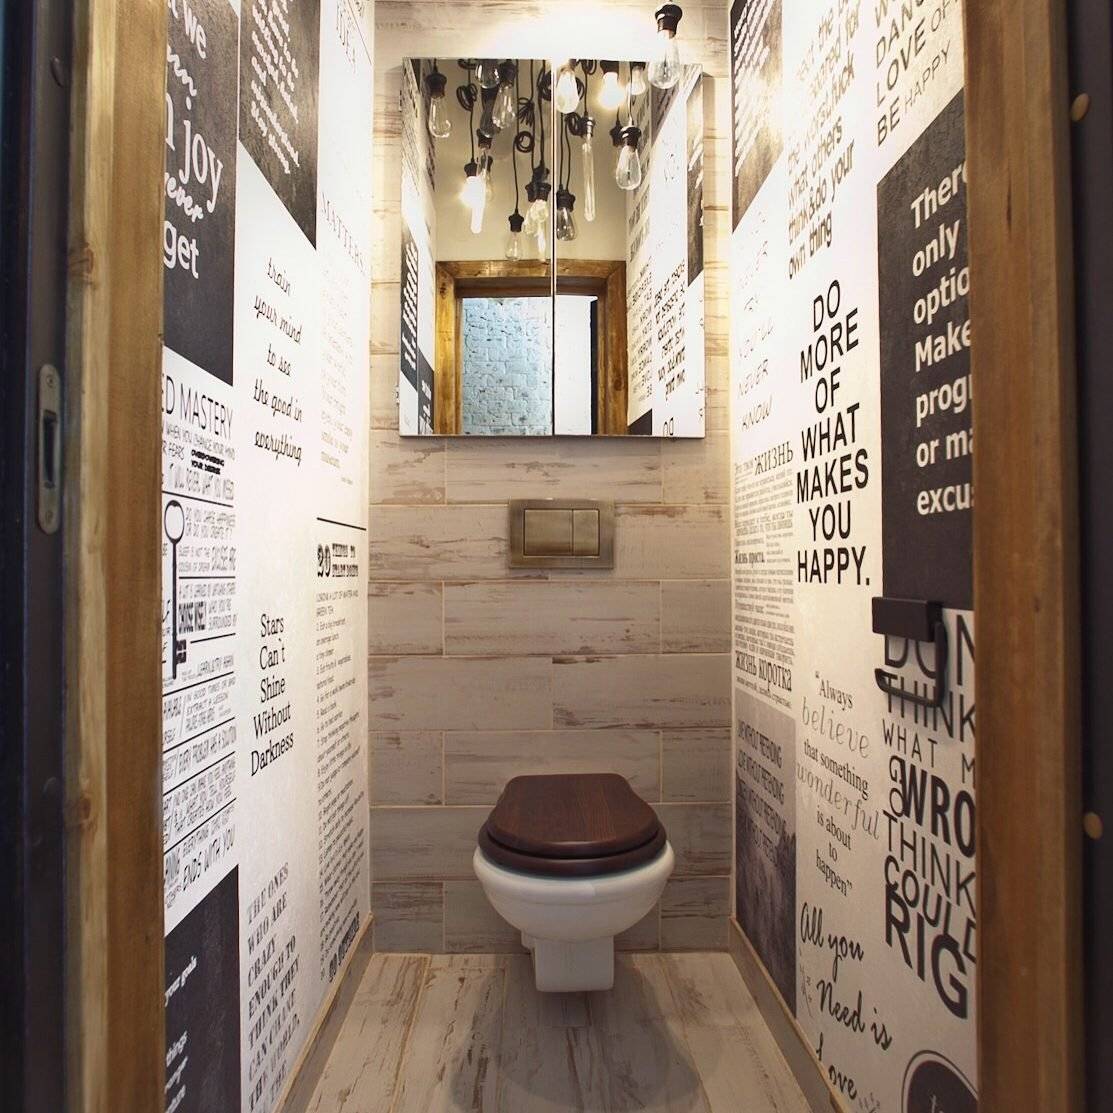 Туалет в стиле лофт - лучшие варианты оформления + фото!